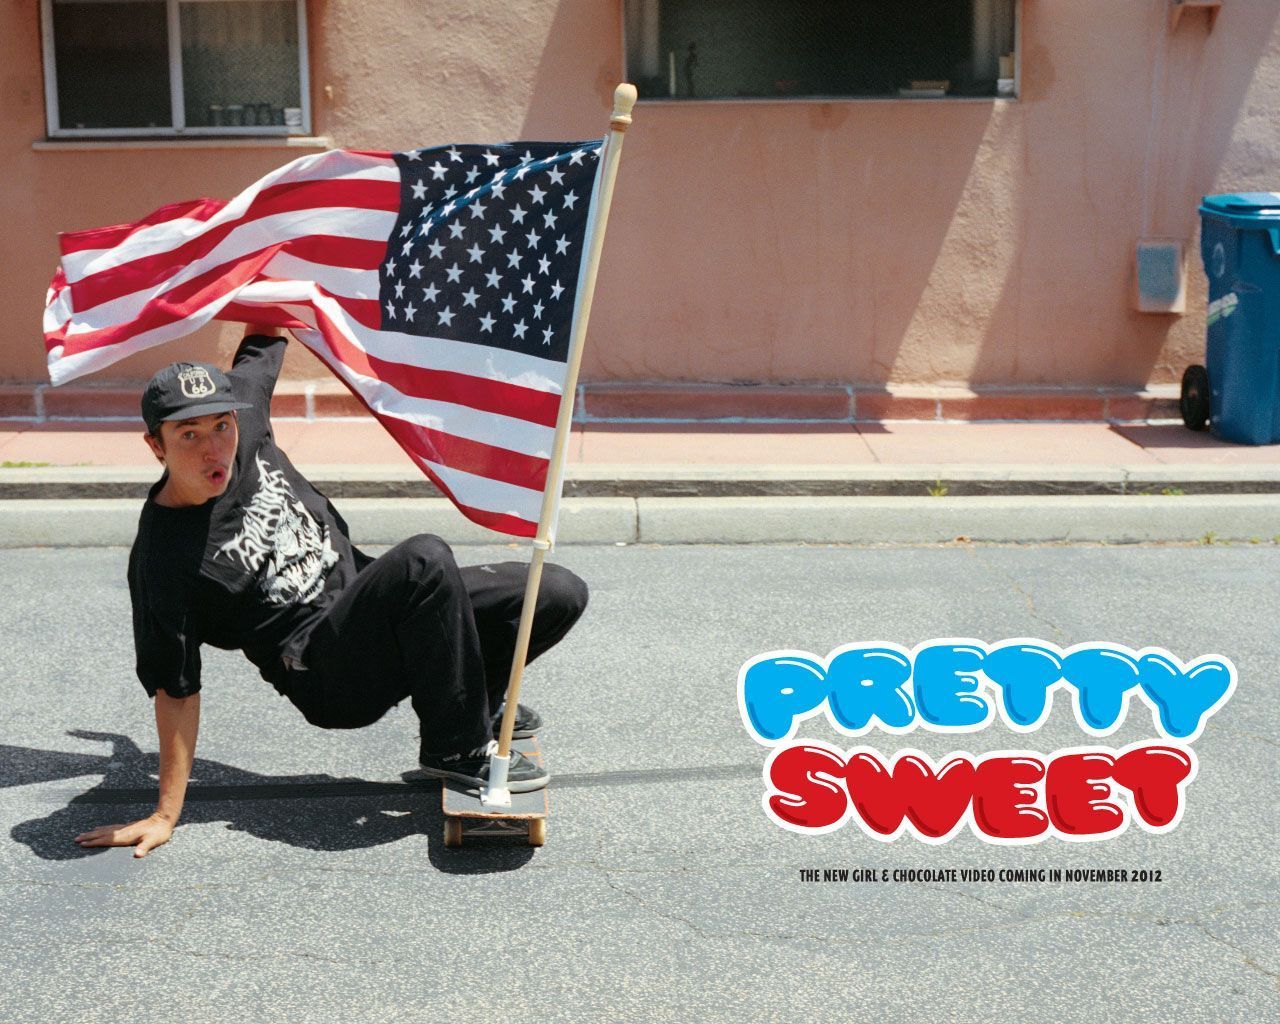 Wallpapers - Pretty Sweet, A Skateboarding Video